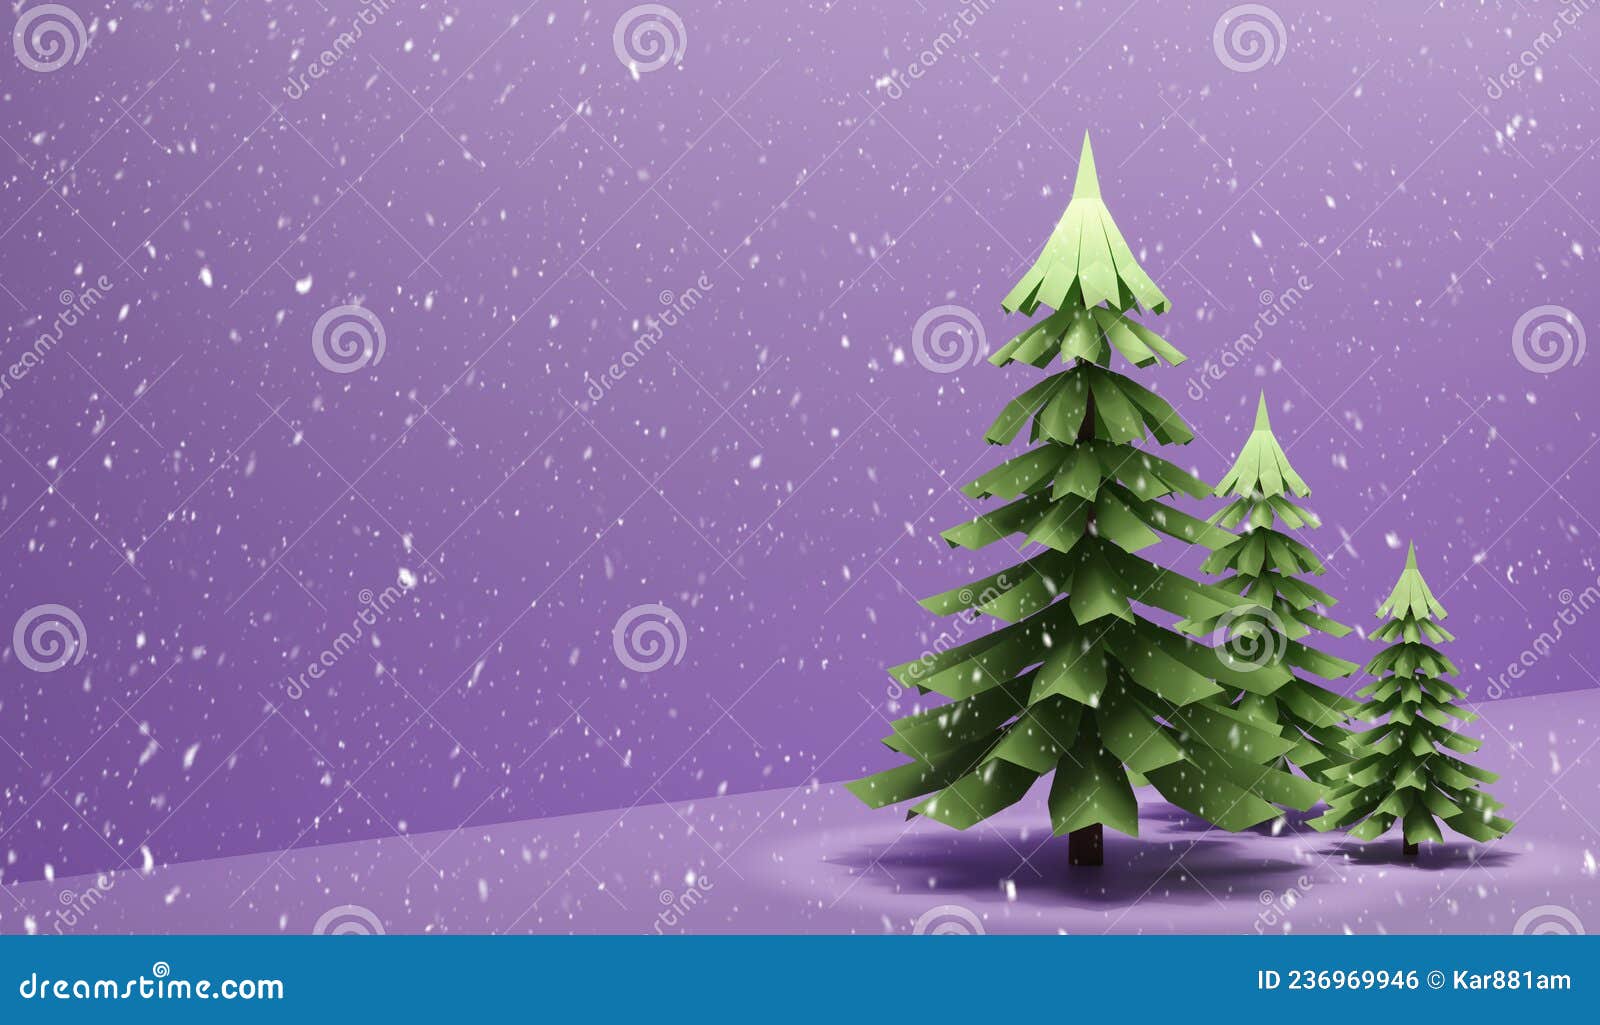 Mùa Giáng sinh đã đến gần và Nền giáng sinh 2024 chắc chắn sẽ khiến bạn thêm phần phấn khích trong việc chuẩn bị cho ngày lễ đặc biệt này. Hãy cùng xem hình ảnh liên quan để cảm nhận không khí noel sớm nhất nhé!